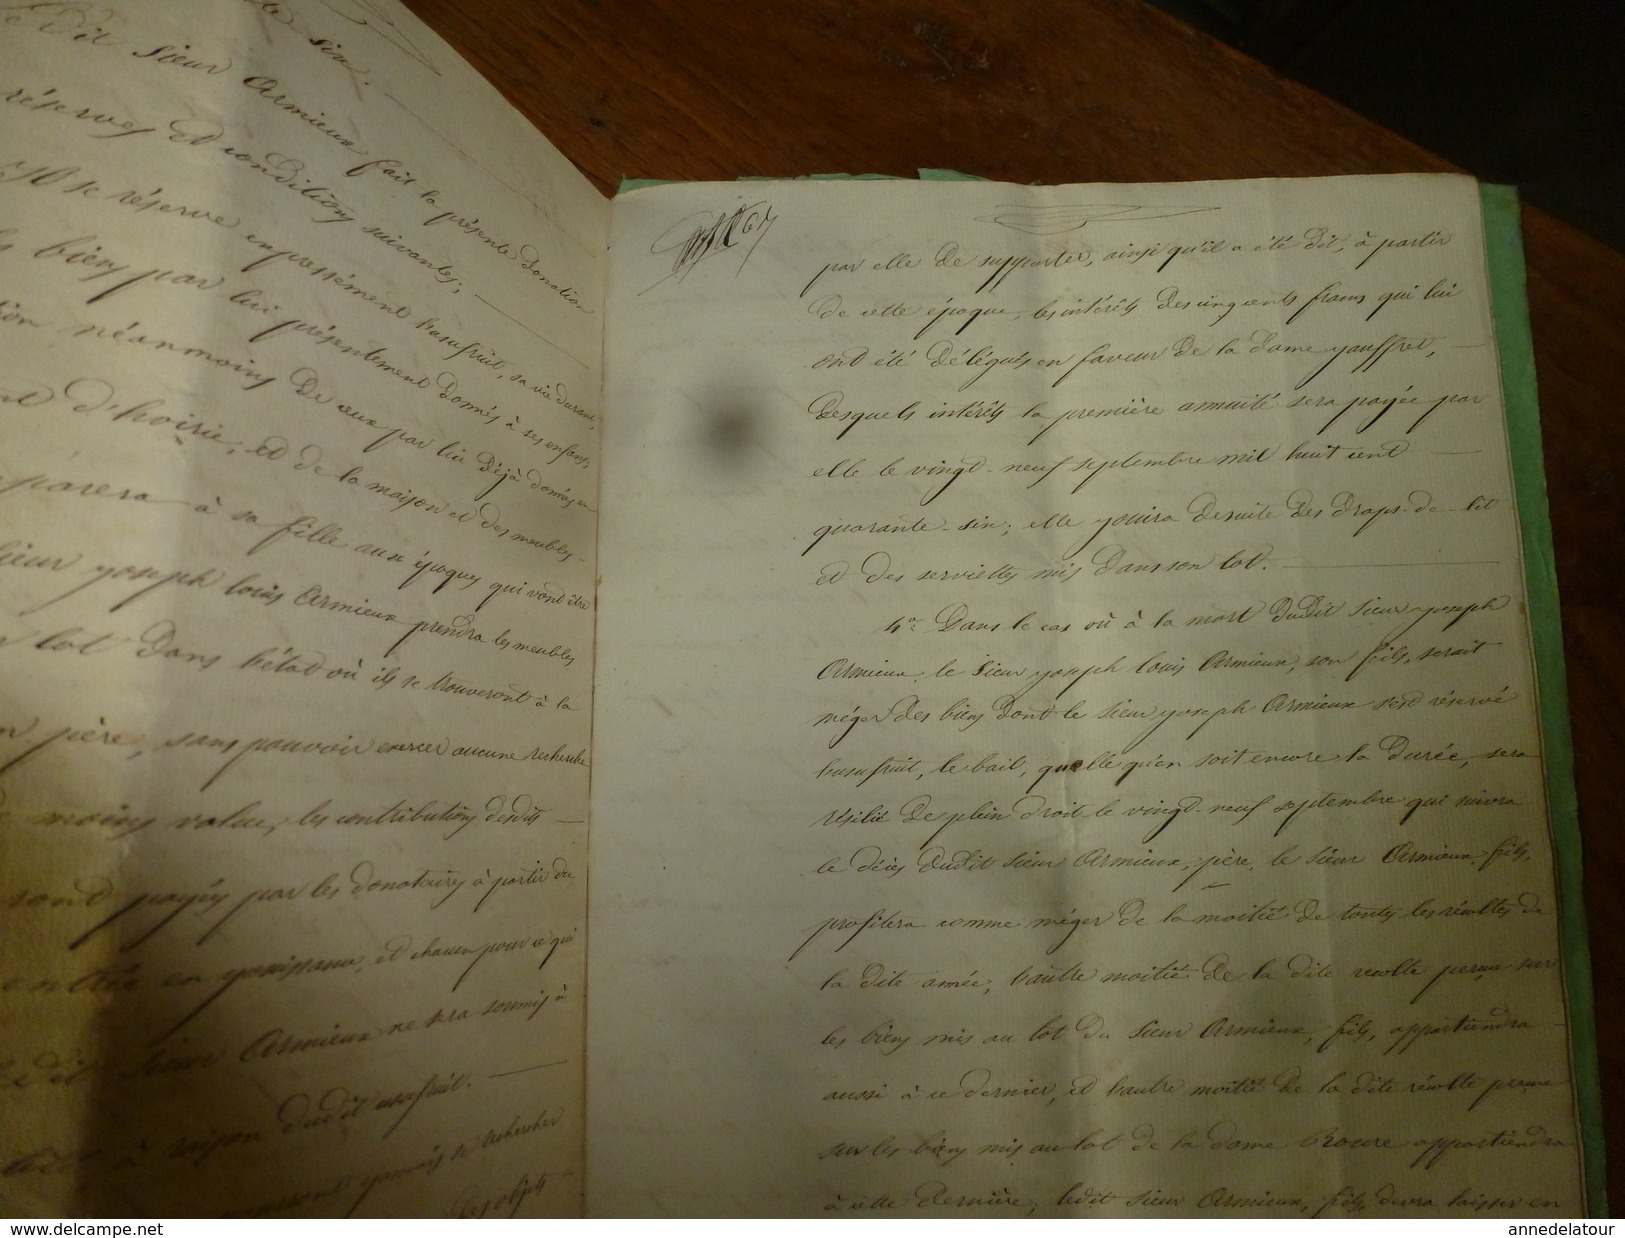 1844 Important ACTE notarié  par Joseph Armieux  DONATION ENTRE VIFS sur papier filigrane et cachet sec + cachet mouillé